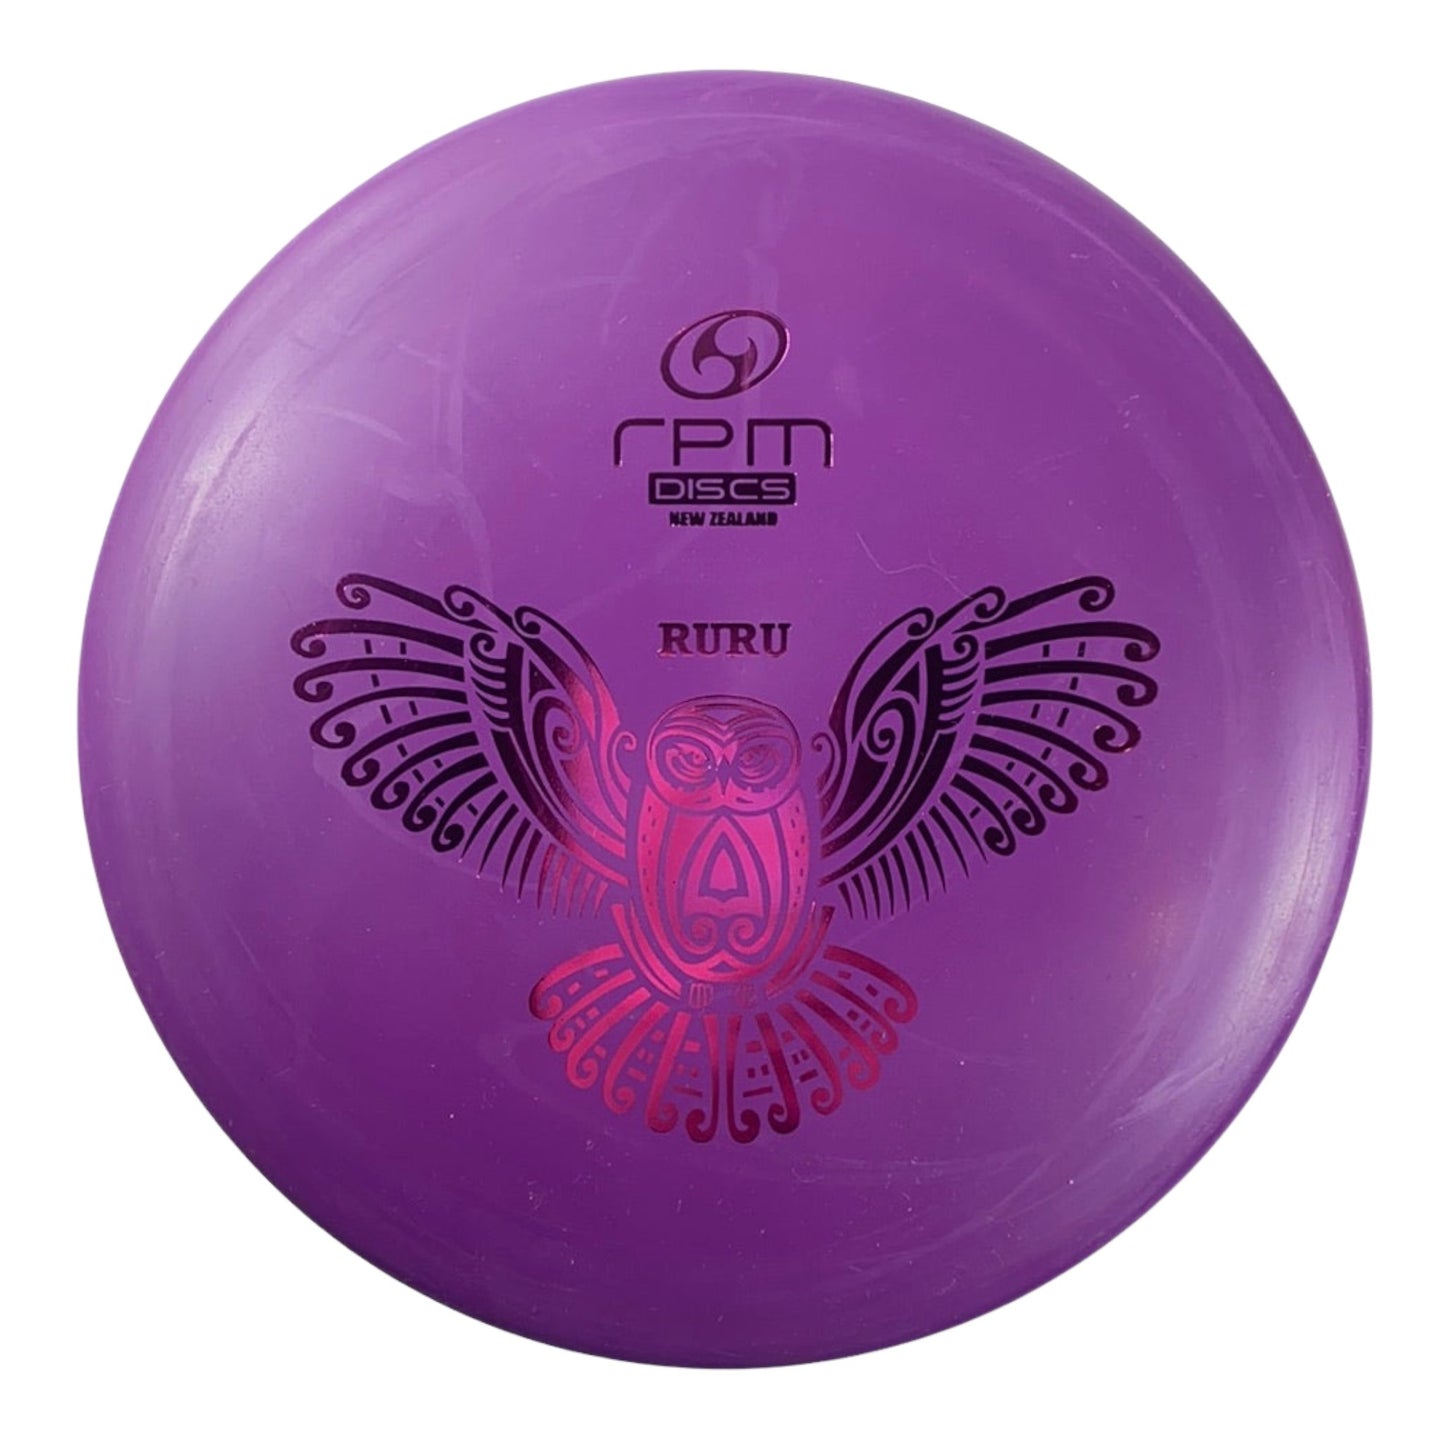 RPM Discs Ruru | Strata | Purple/Pink 173-174g Disc Golf